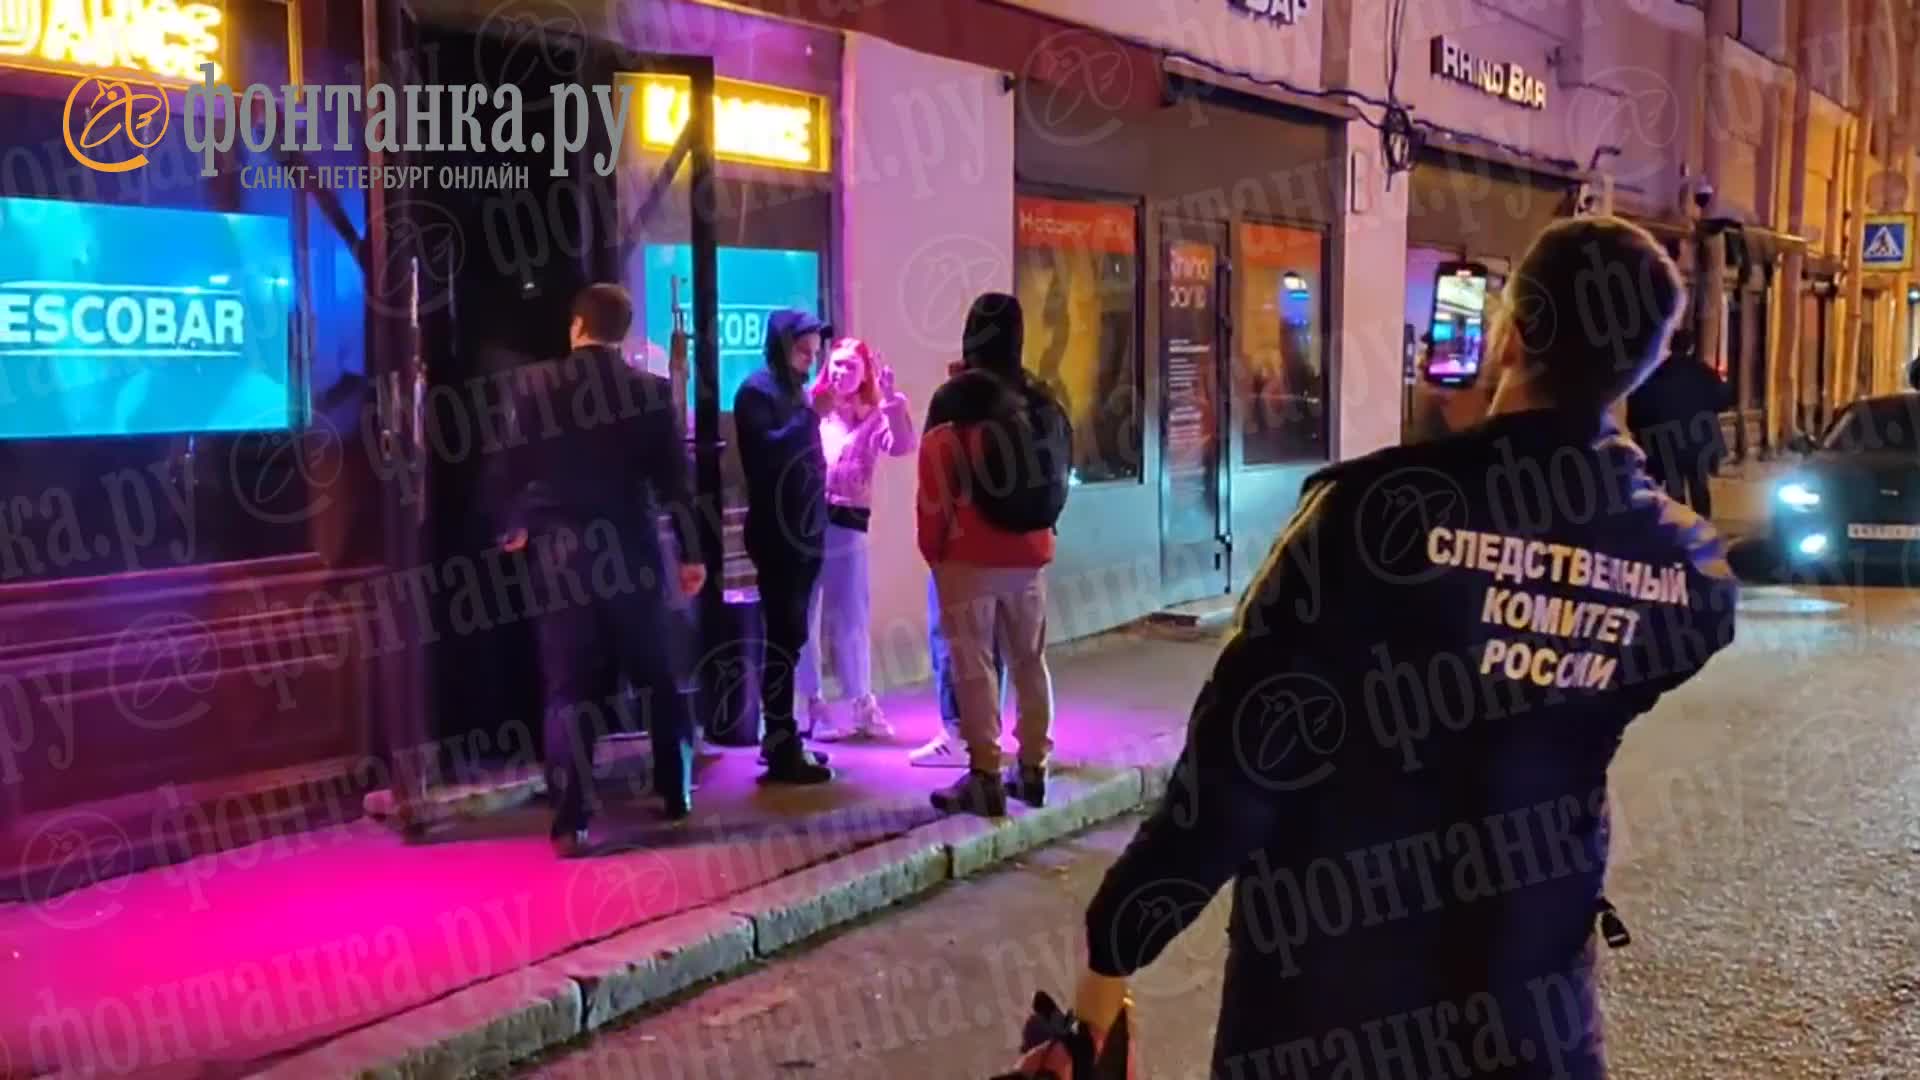 Зеленоград, новости: Посетитель бара напал на приехавшего по вызову полицейского